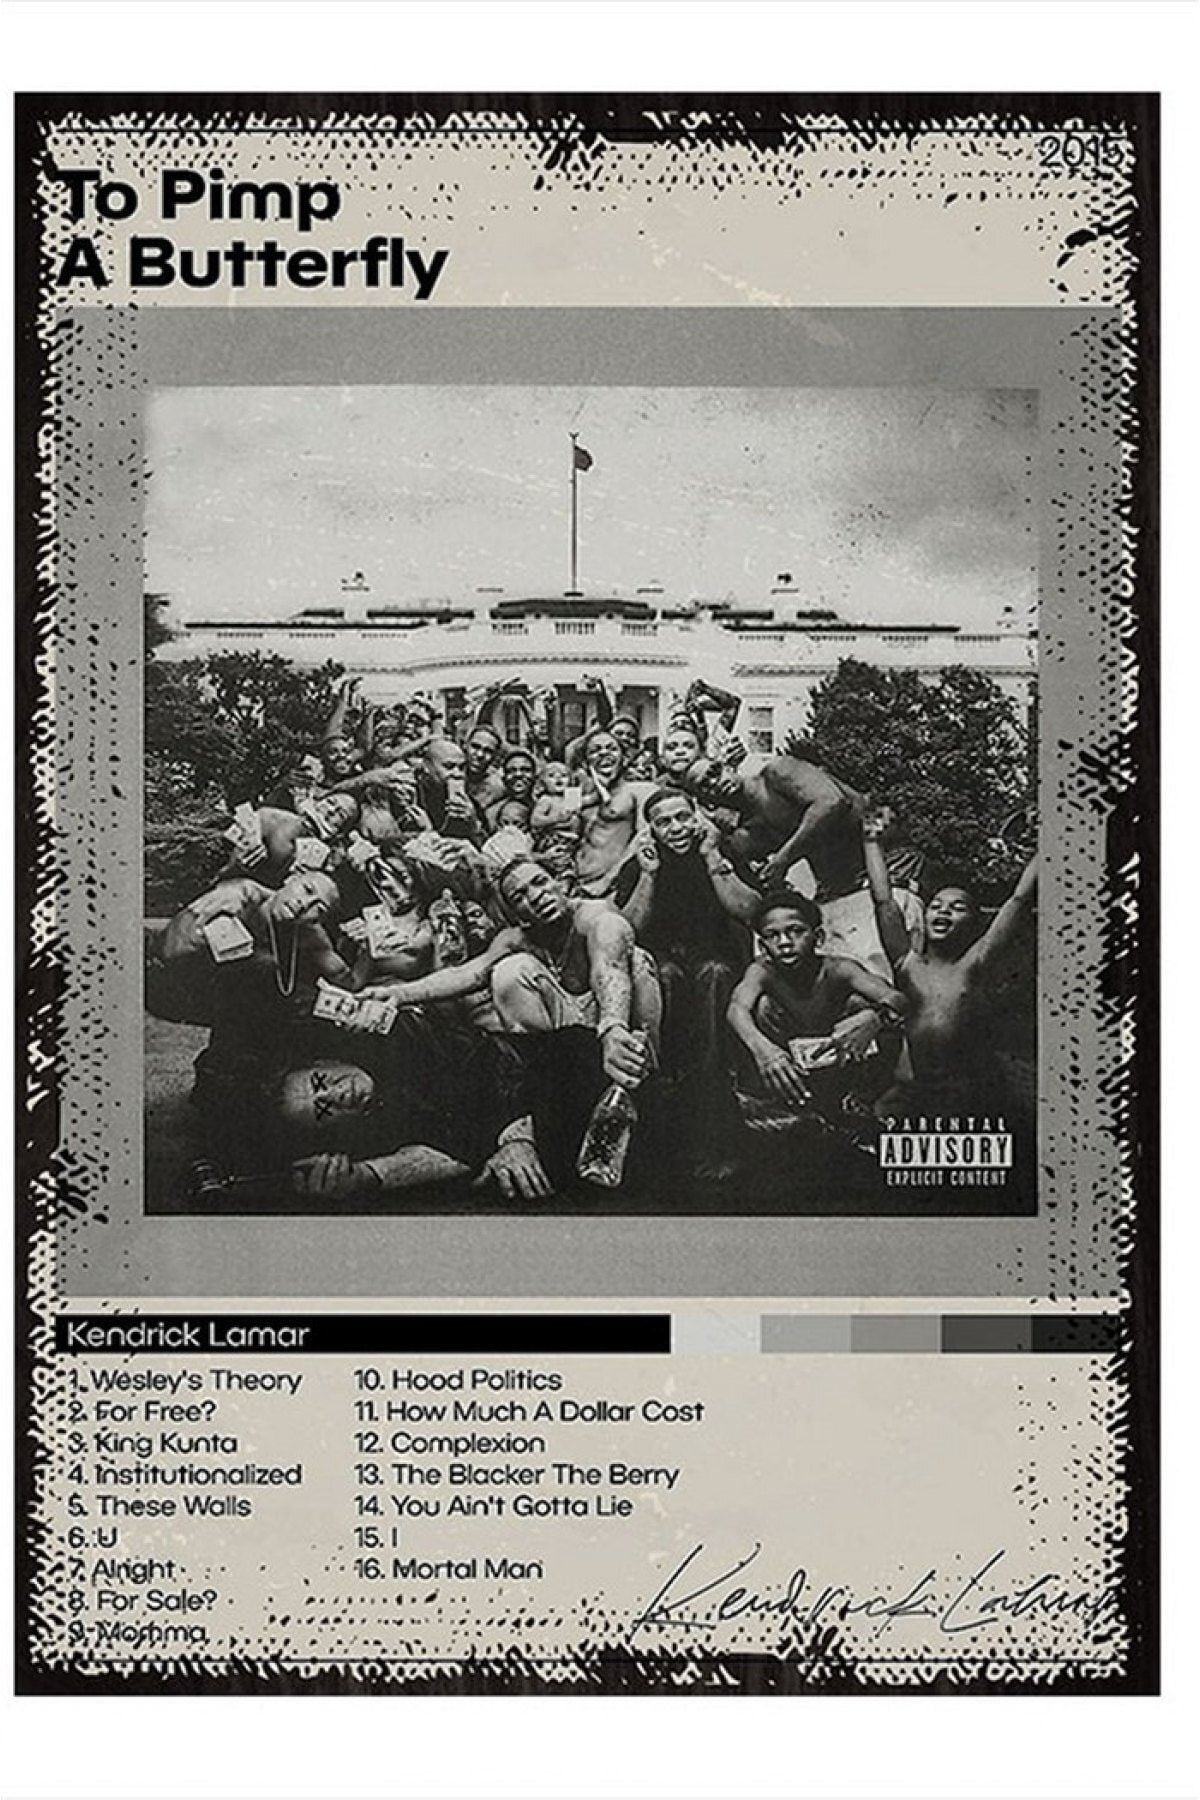 ekart Kendrick Lamar Müzik Poster Model Ahşap Tablo 15cmx 22cm